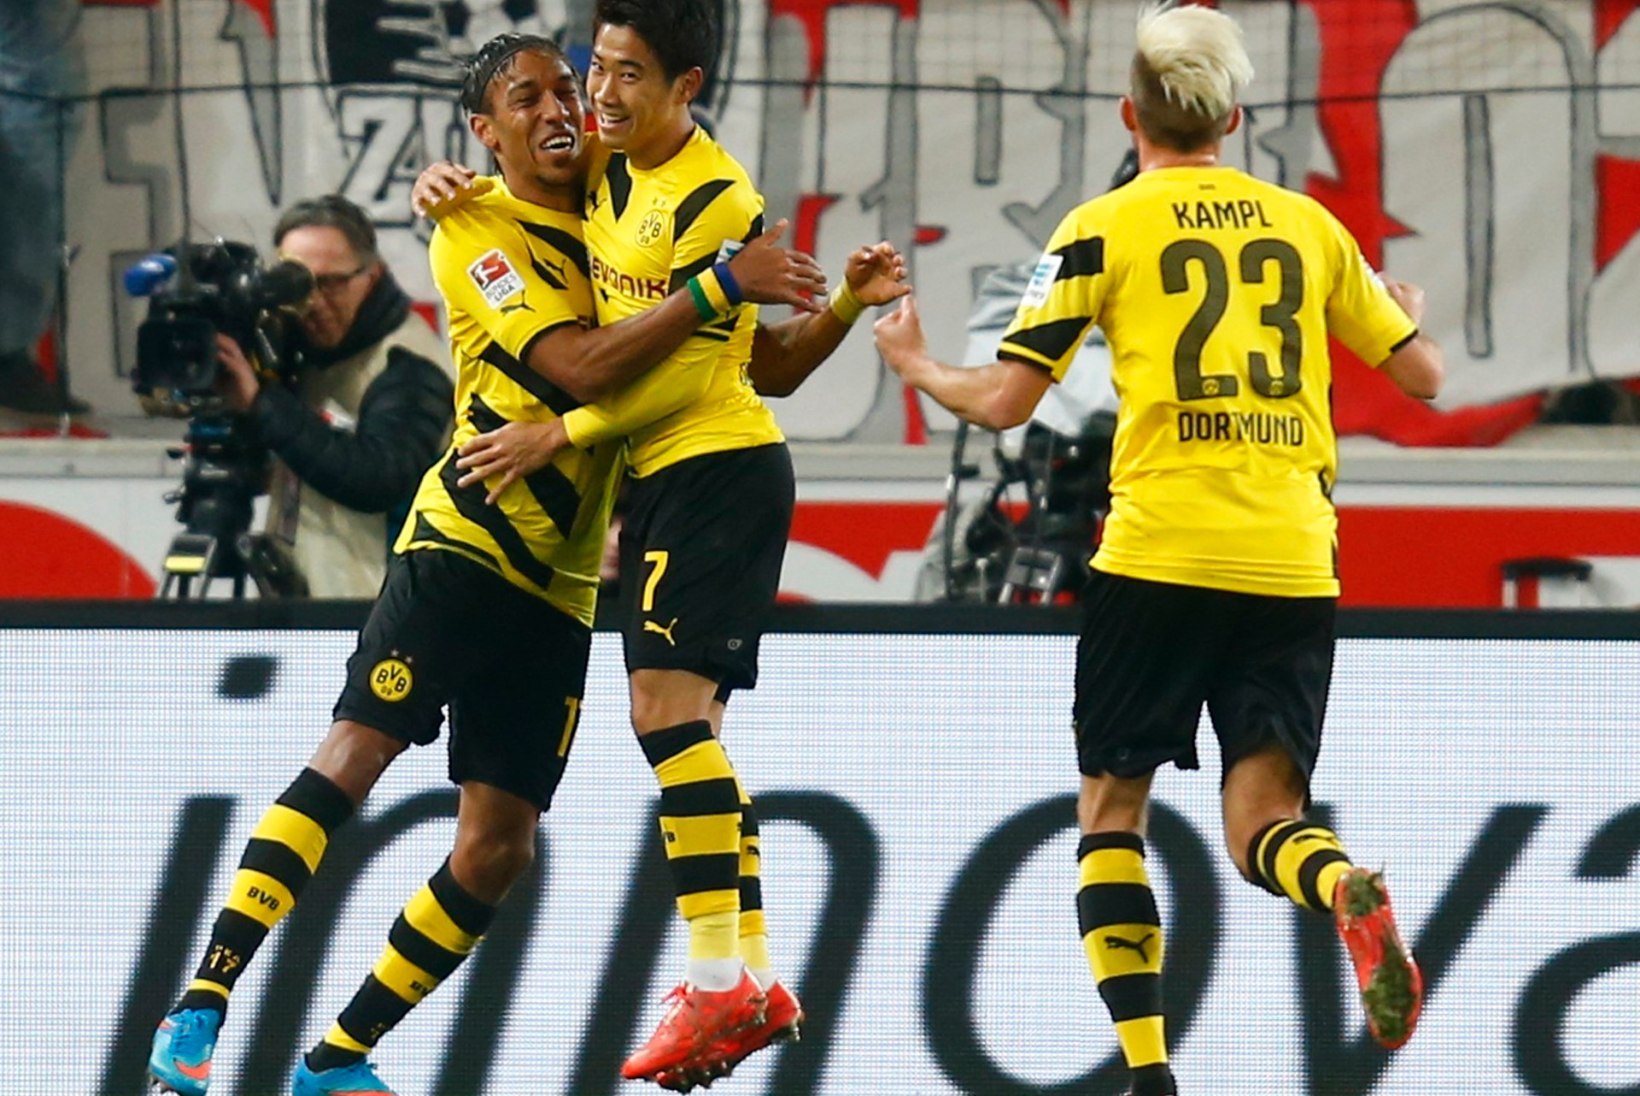 GALERII: võidusoone leidnud Dortmundi Borussia on tõusnud juba kümnendaks